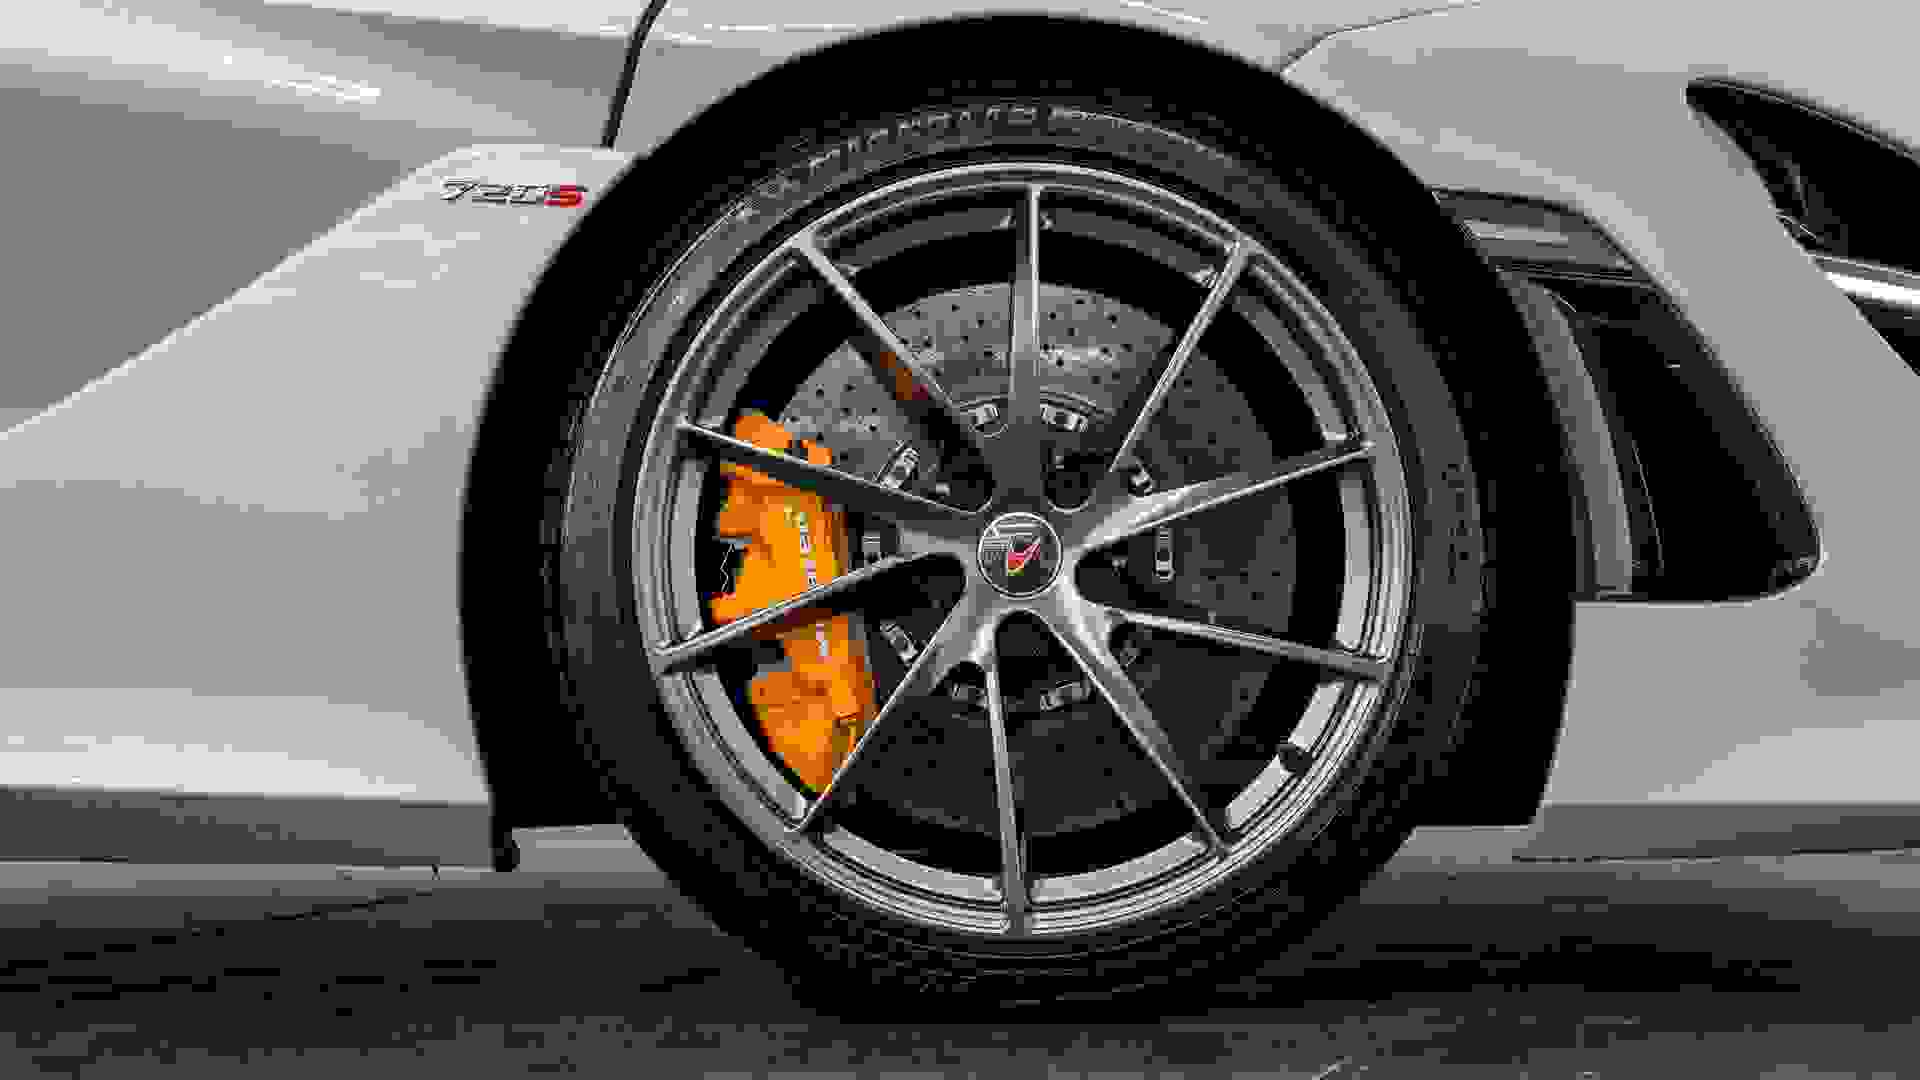 McLaren 720S Photo 09767a5f-9258-4170-9a70-16e340e67066.jpg